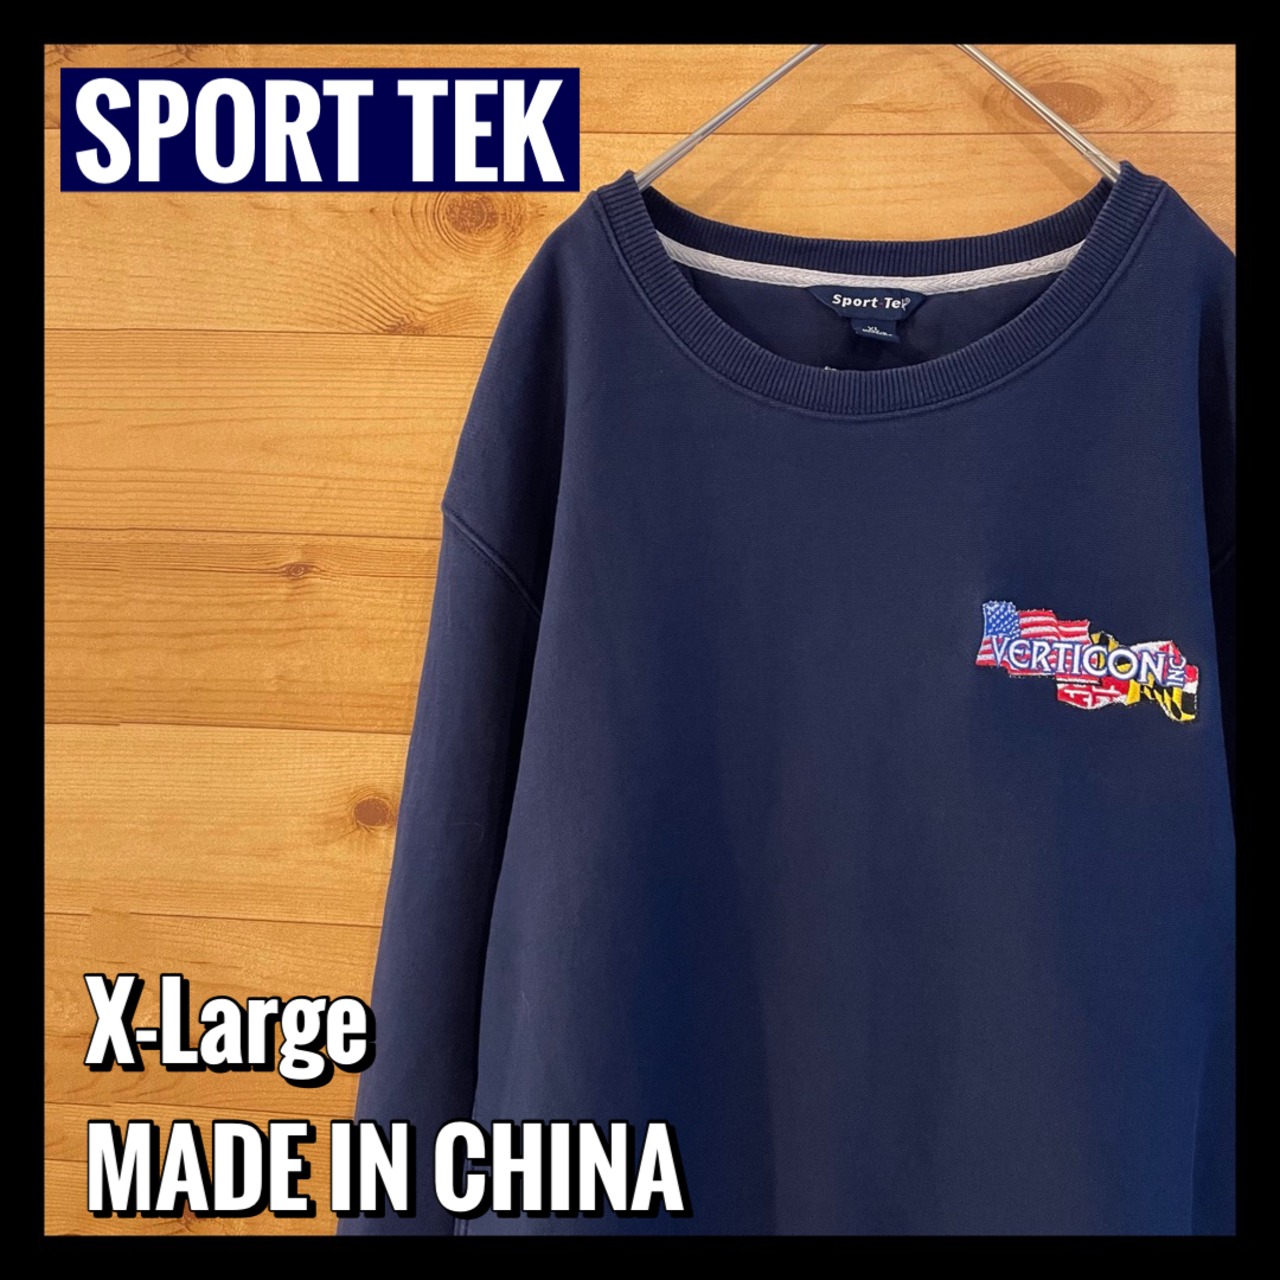 【SPORT TEK】 ワンポイント スウェット 企業ロゴ 刺繍ロゴ XL アメリカ古着